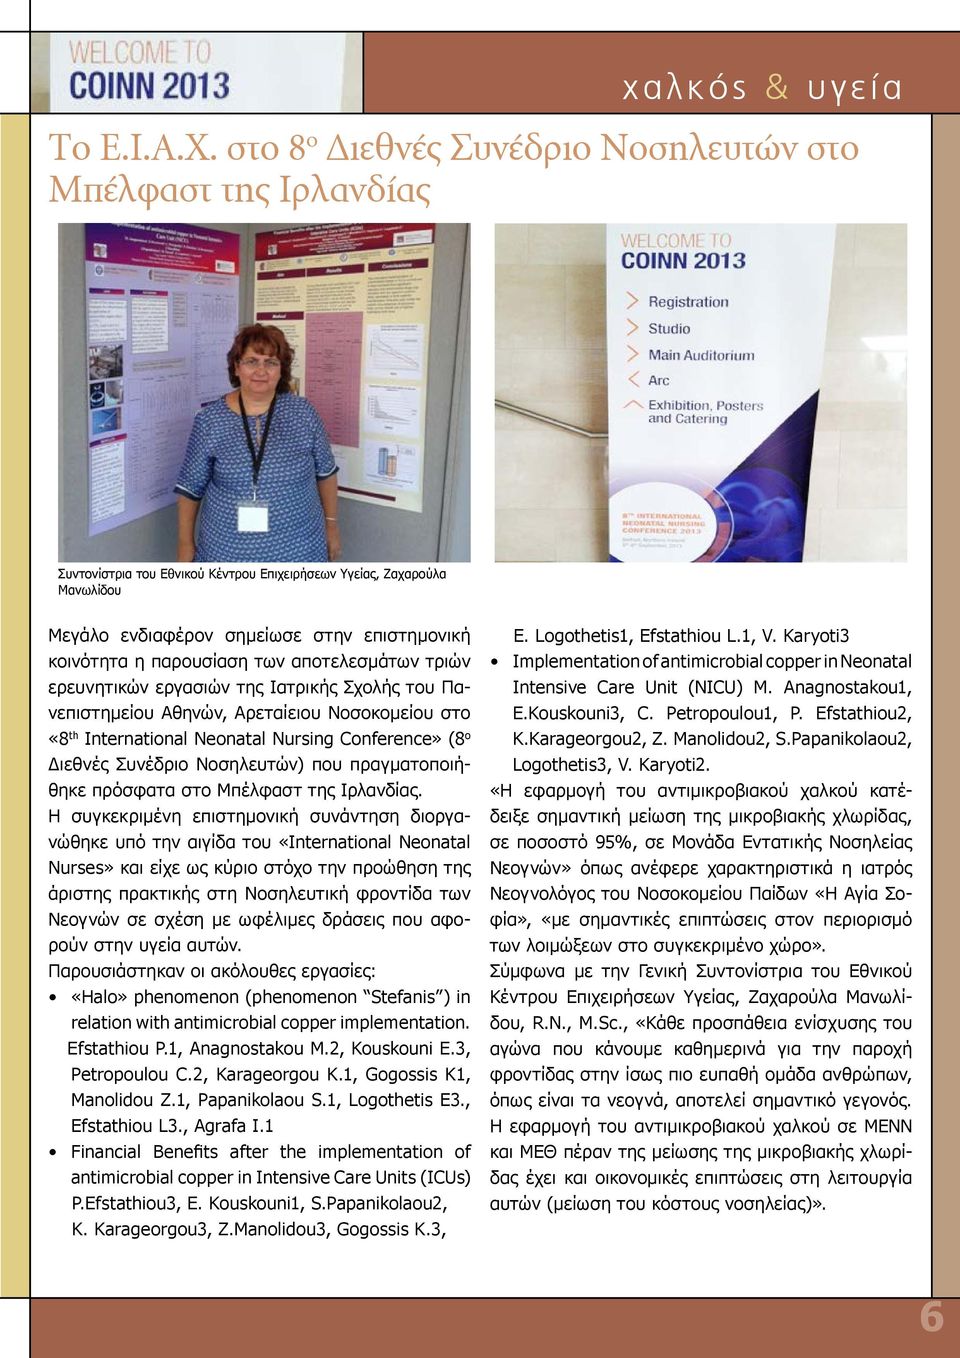 παρουσίαση των αποτελεσμάτων τριών ερευνητικών εργασιών της Ιατρικής Σχολής του Πανεπιστημείου Αθηνών, Αρεταίειου Νοσοκομείου στο «8 th International Neonatal Nursing Conference» (8 ο Διεθνές